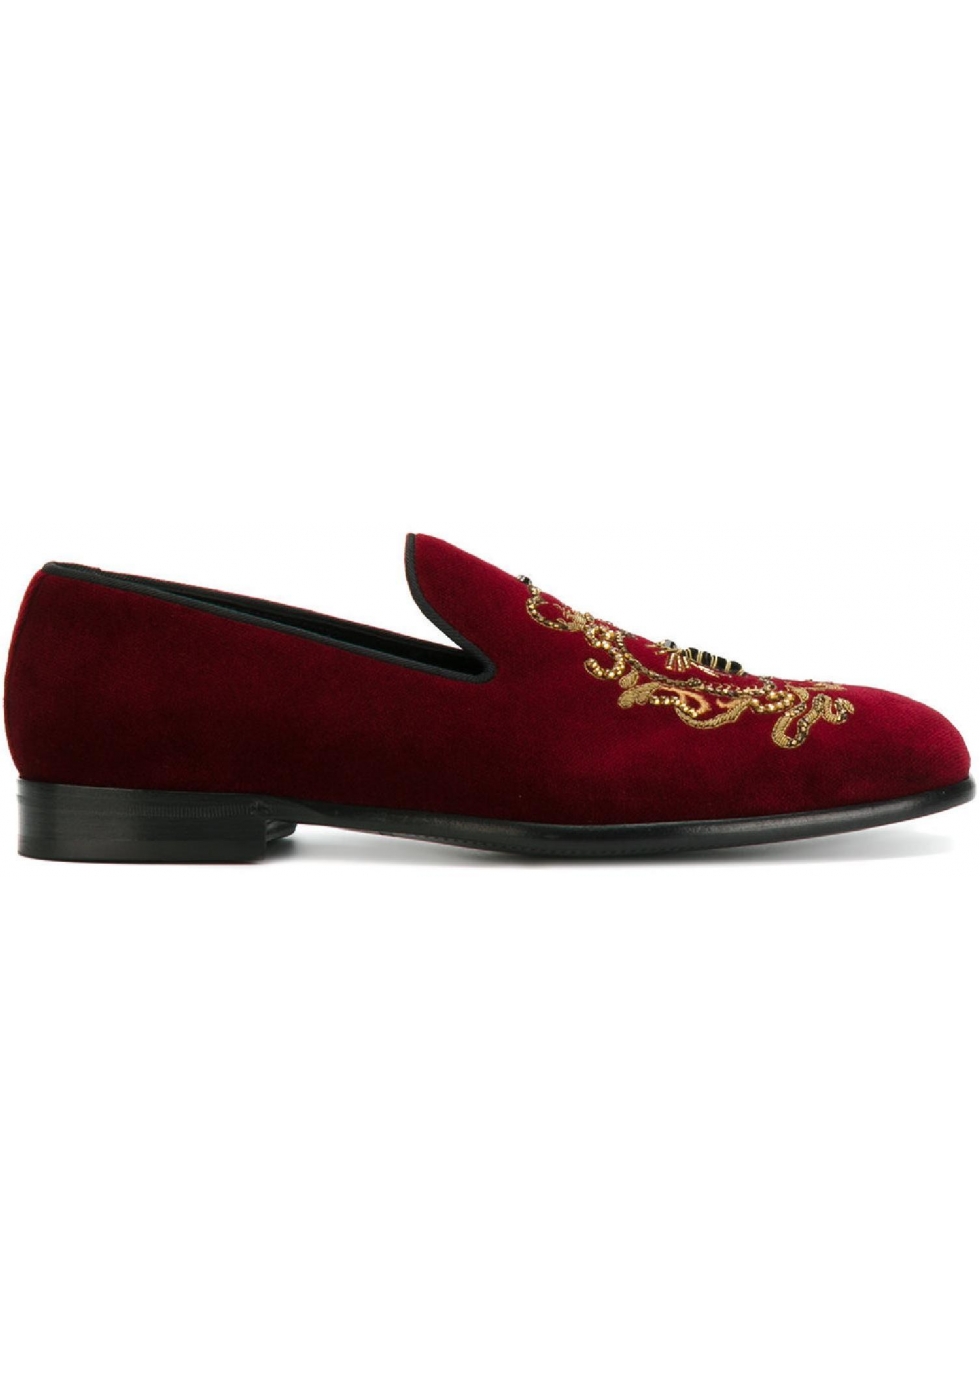 Dolce&Gabbana men's loafers in burgundy velvet - Italian Boutique